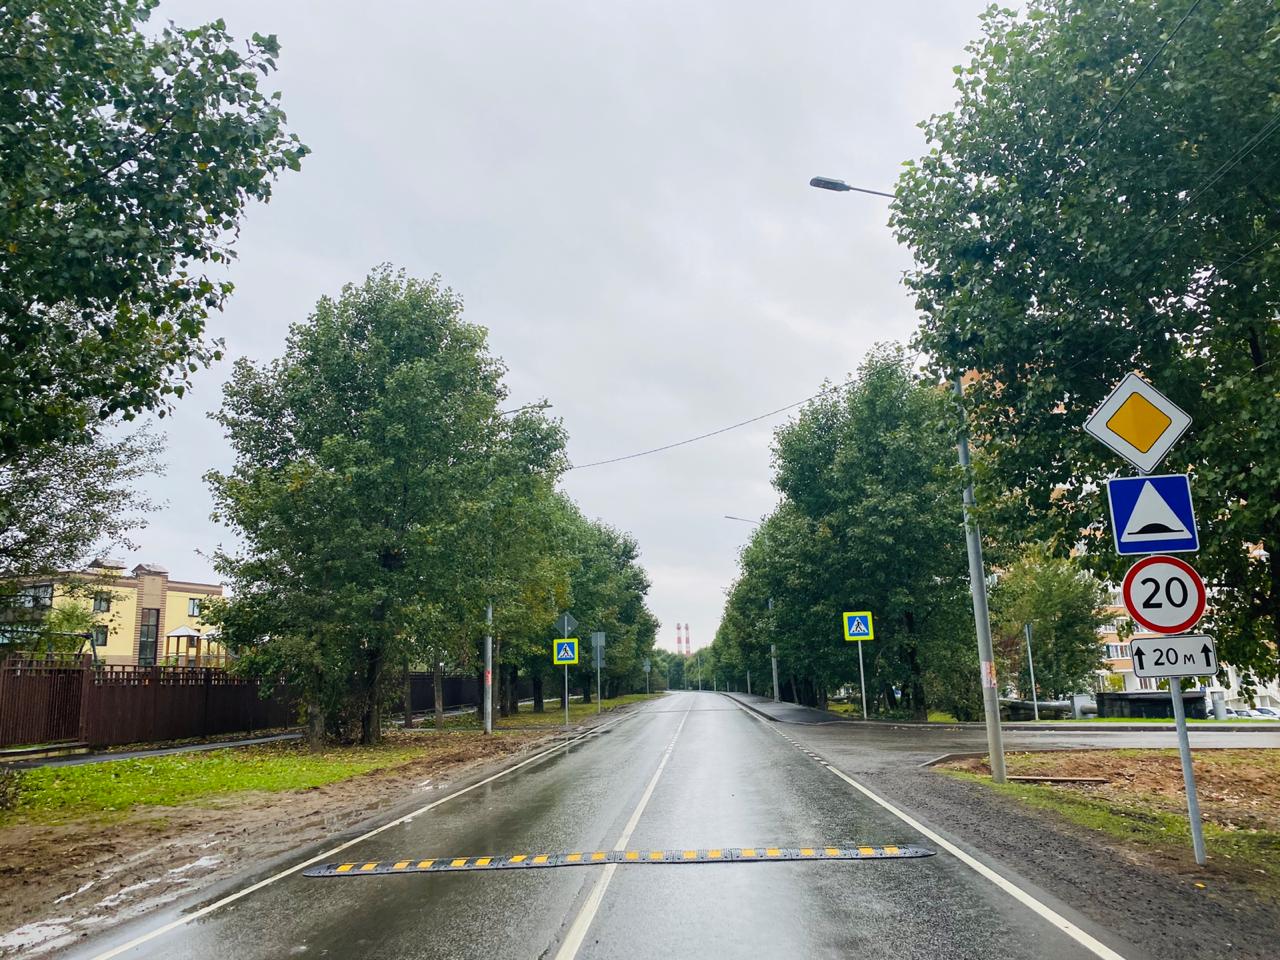 Безопасность на дорогах: опознавательные знаки поставили на проезжей части в Филимонковском